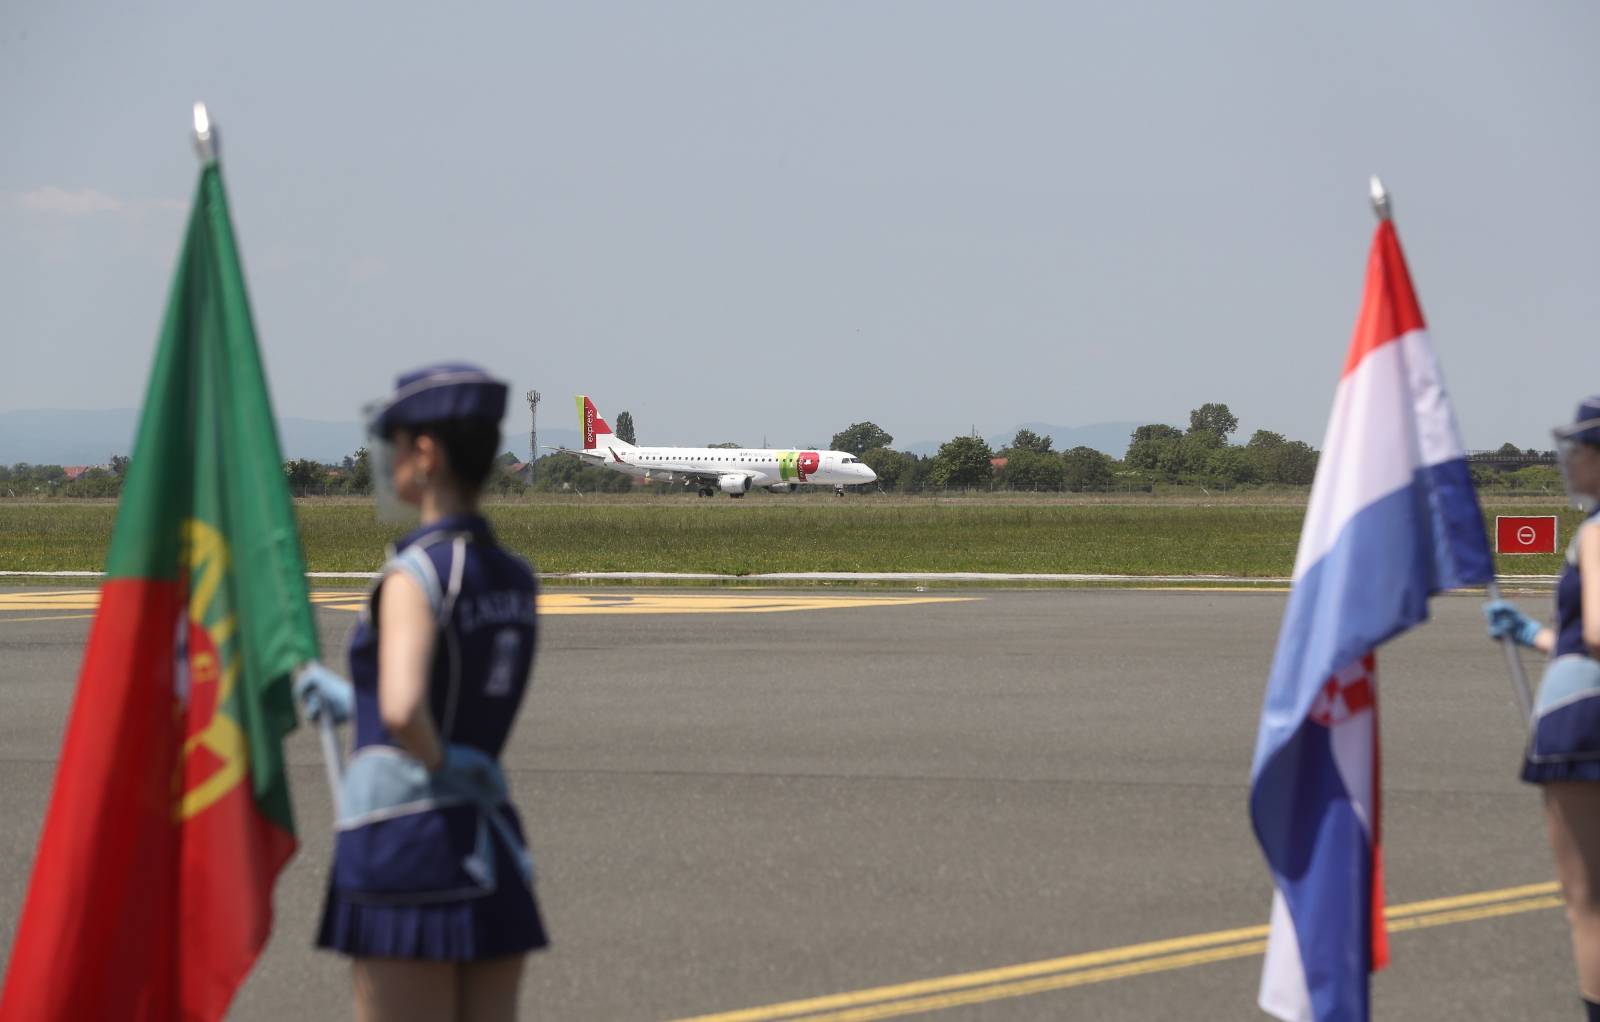 Aviokompanija TAP Portugal ponovno povezuje putnike između Zagreba i Lisabona